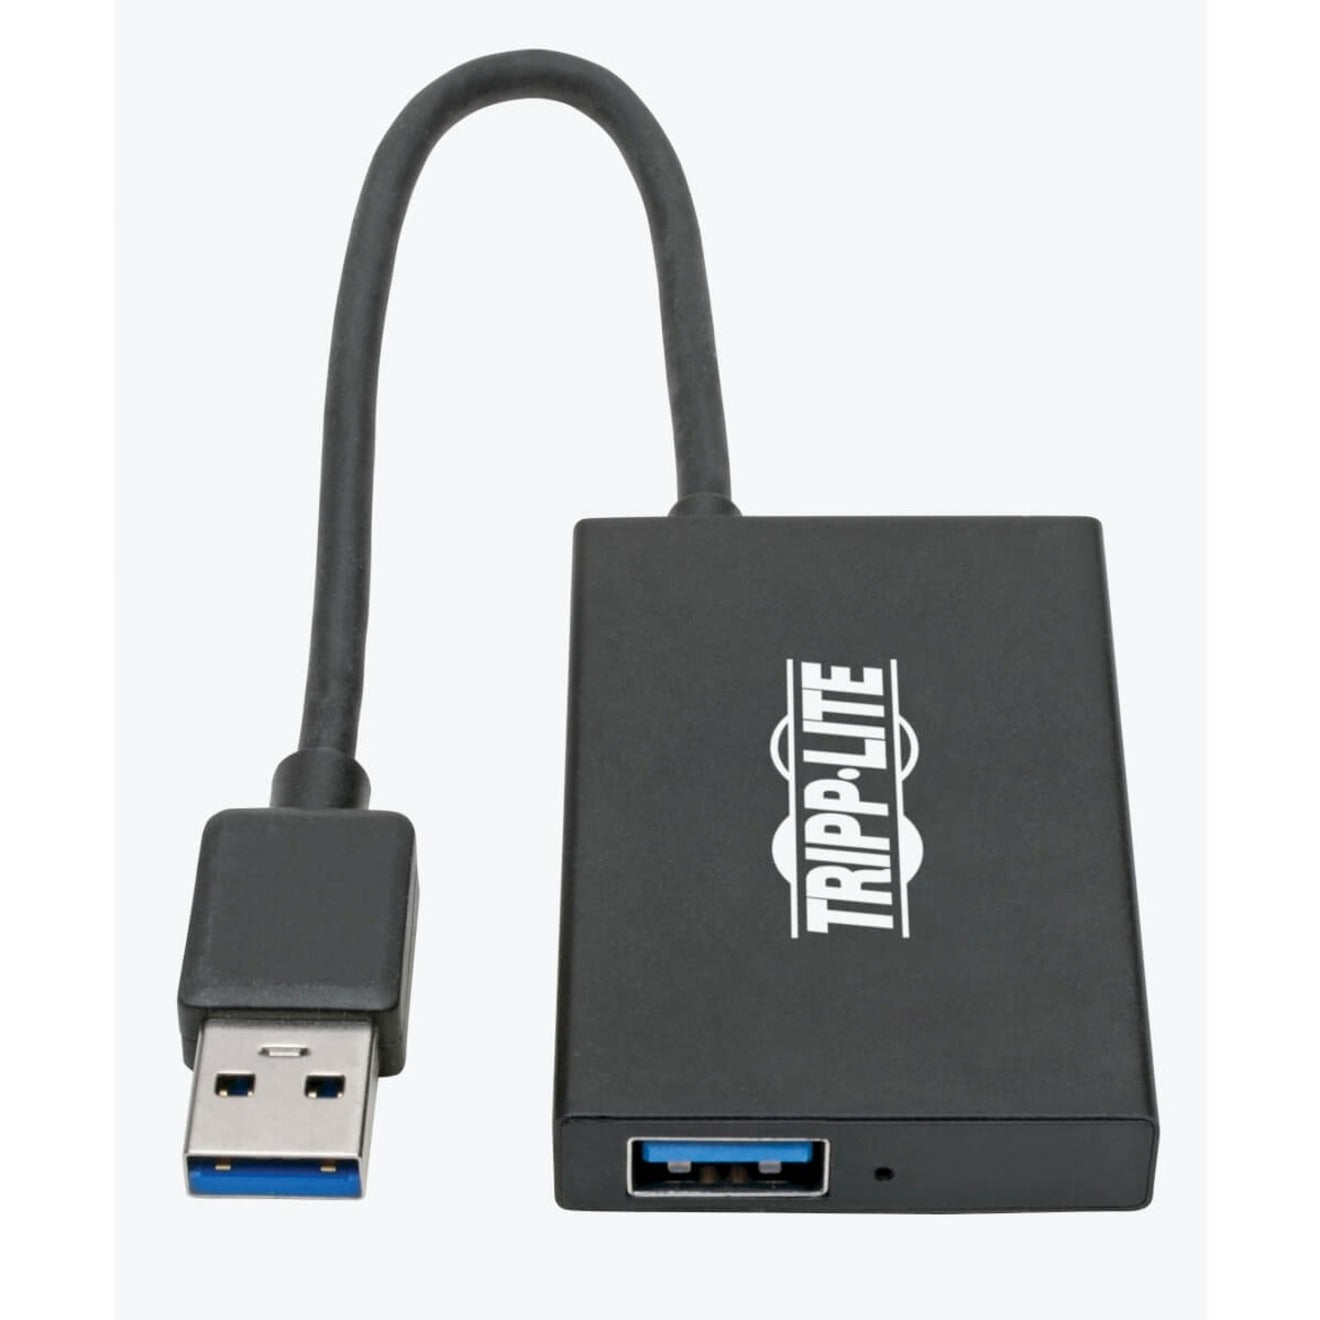 Tripp Lite U360-004-4A-AL USB 3.0 SuperSpeed Slim Hub, 4 USB-A Ports, Portable, Aluminum